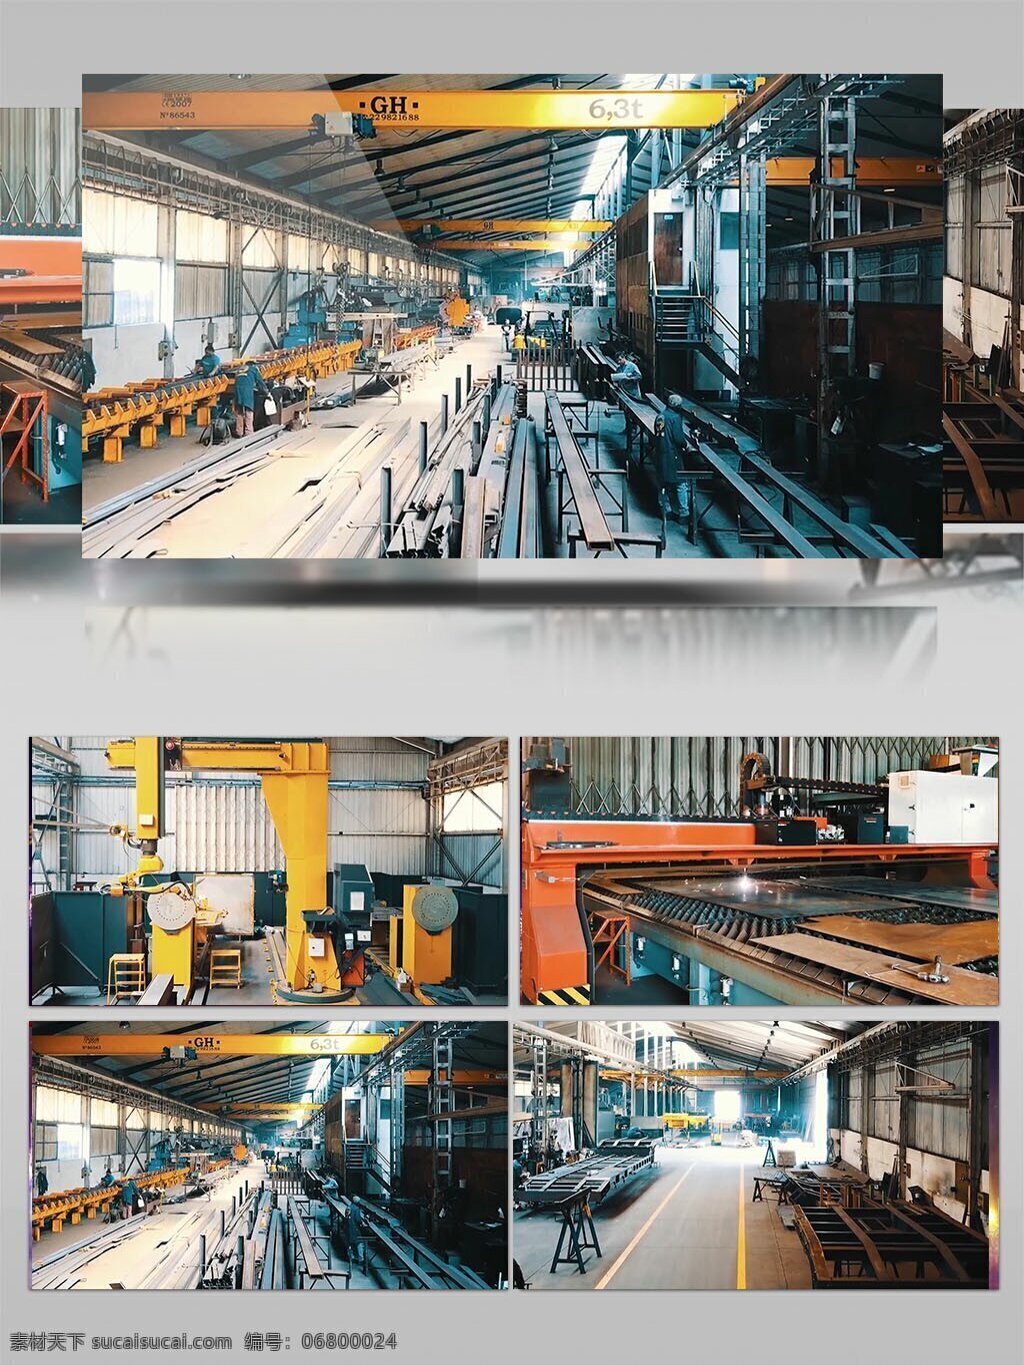 钢铁 工厂 生产 视频 厂房 工厂工作 视频素材